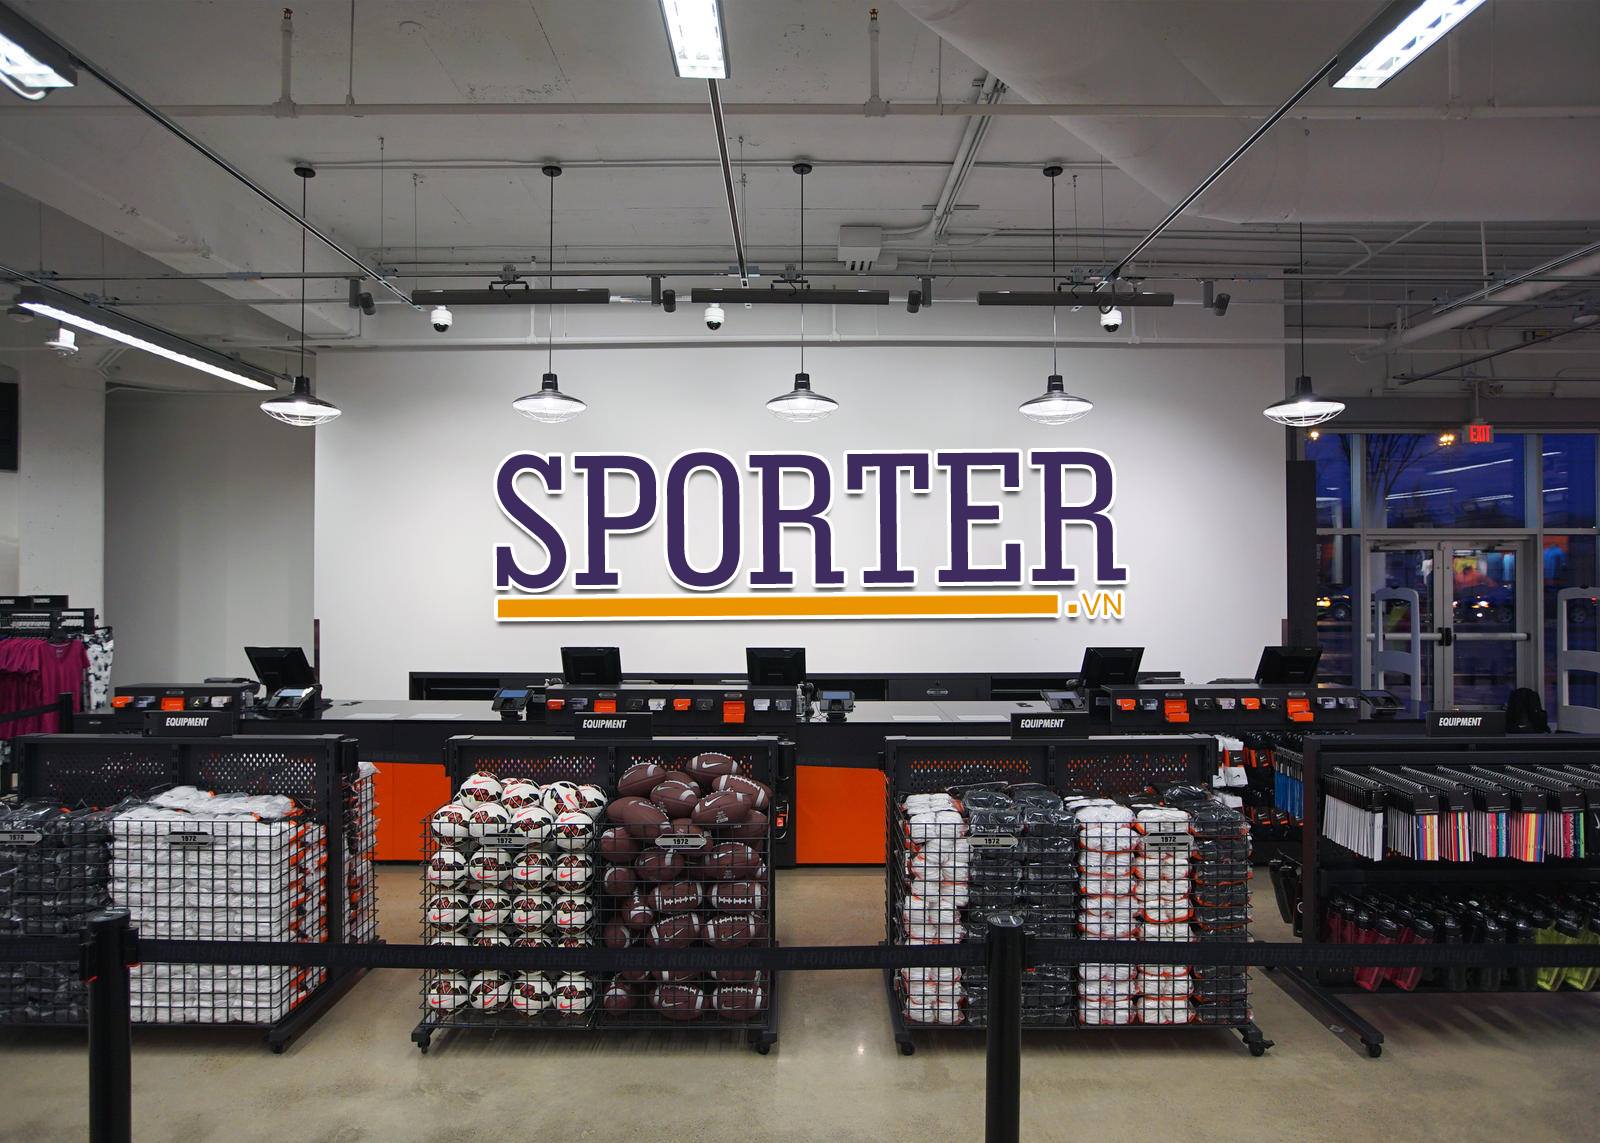 Sporter.vn - Hệ thống cửa hàng bán đồ thể thao uy tín tại TP. HCM